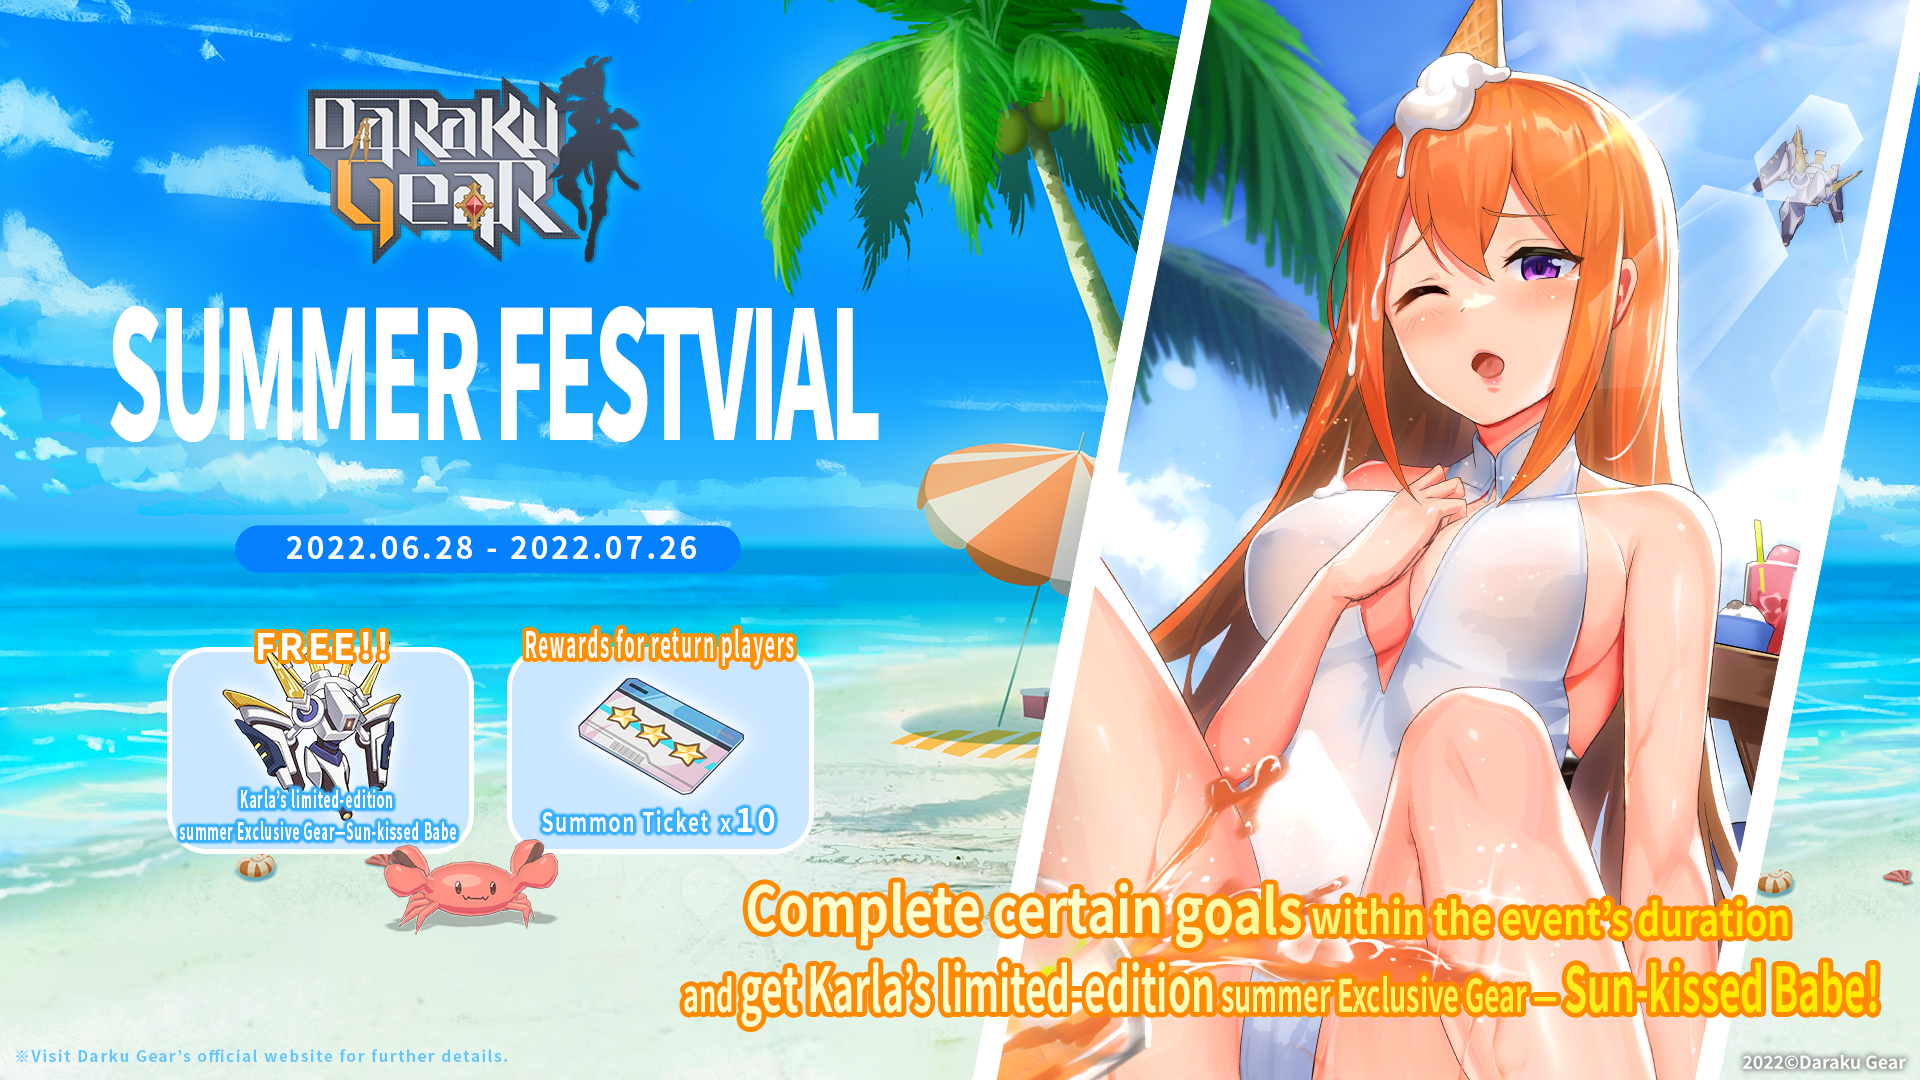 Daraku Gear New Summer Event Preview!